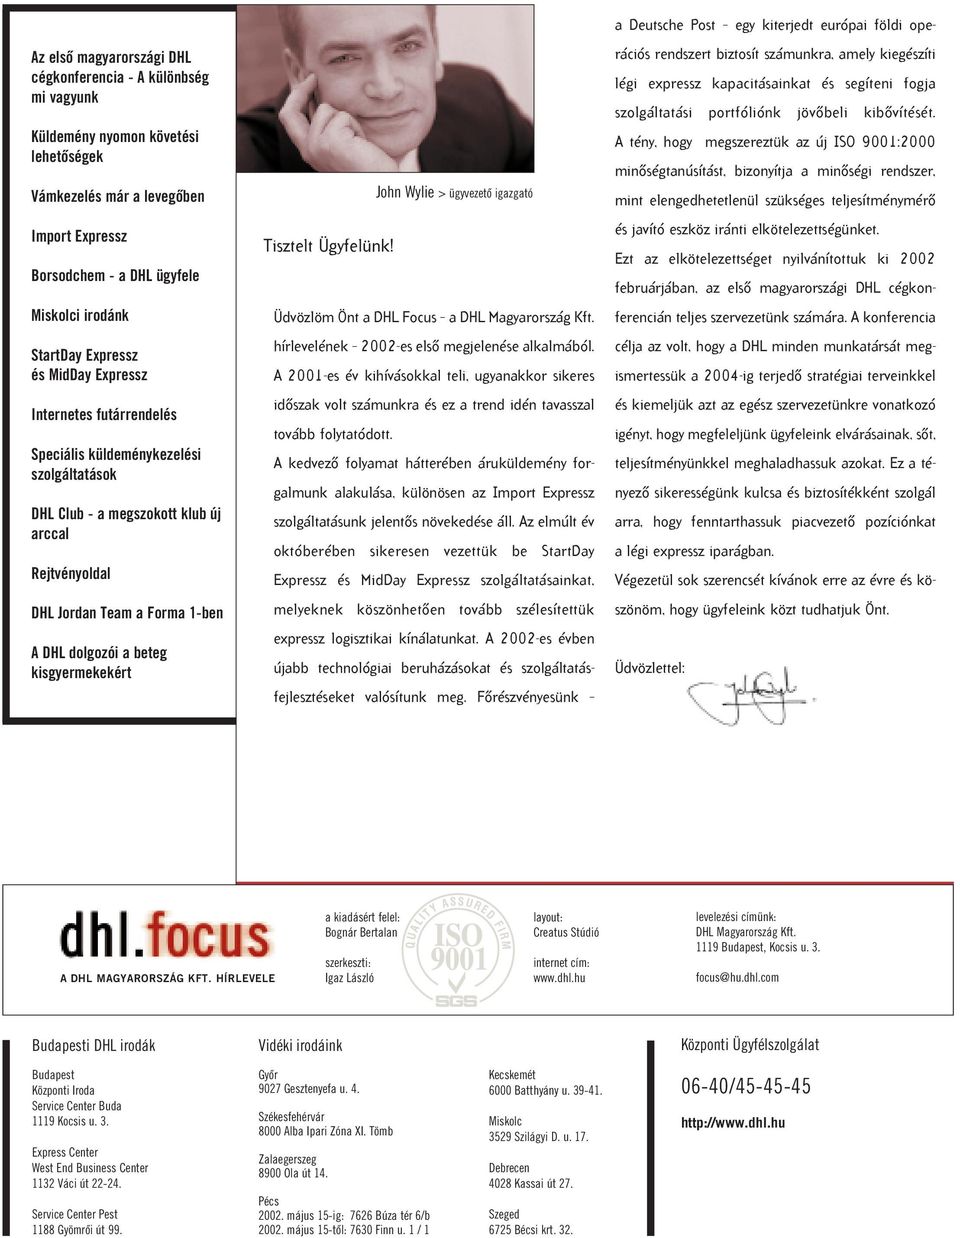 beteg kisgyermekekért John Wylie > ügyvezetô igazgató Tisztelt Ügyfelünk! Üdvözlöm Önt a DHL Focus a DHL Magyarország Kft. hírlevelének 2002-es elsô megjelenése alkalmából.